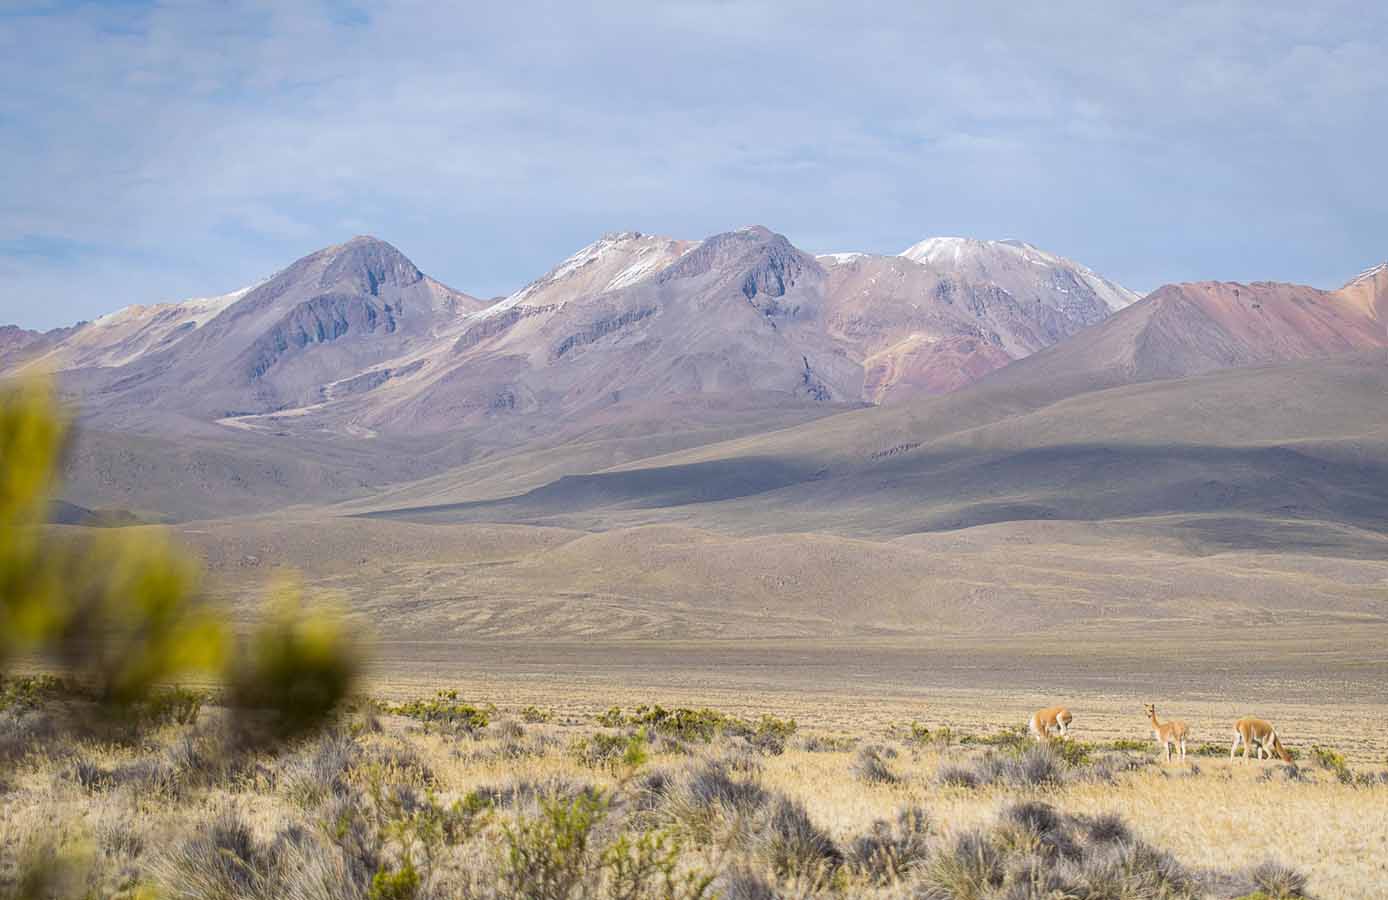 vista de vicuñas en su habitat, ligeramente desertico.